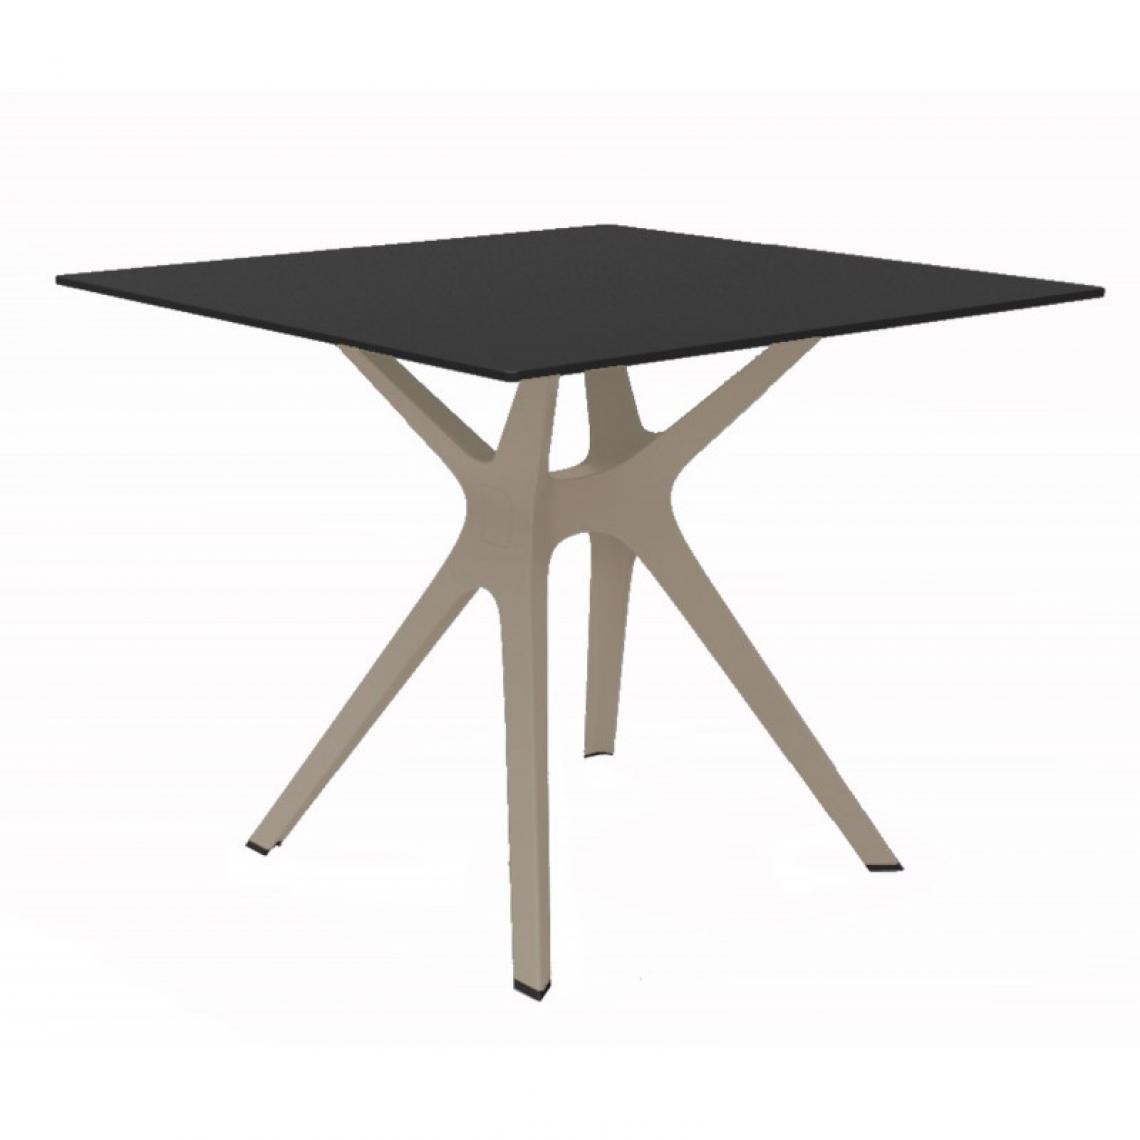 Resol - Table Phenolique 90x90 Pied De Table Vela "s" - Resol - Pied De Sable - Tableau NoirAluminium, phénolique compact, fibre de verre, - Tables à manger